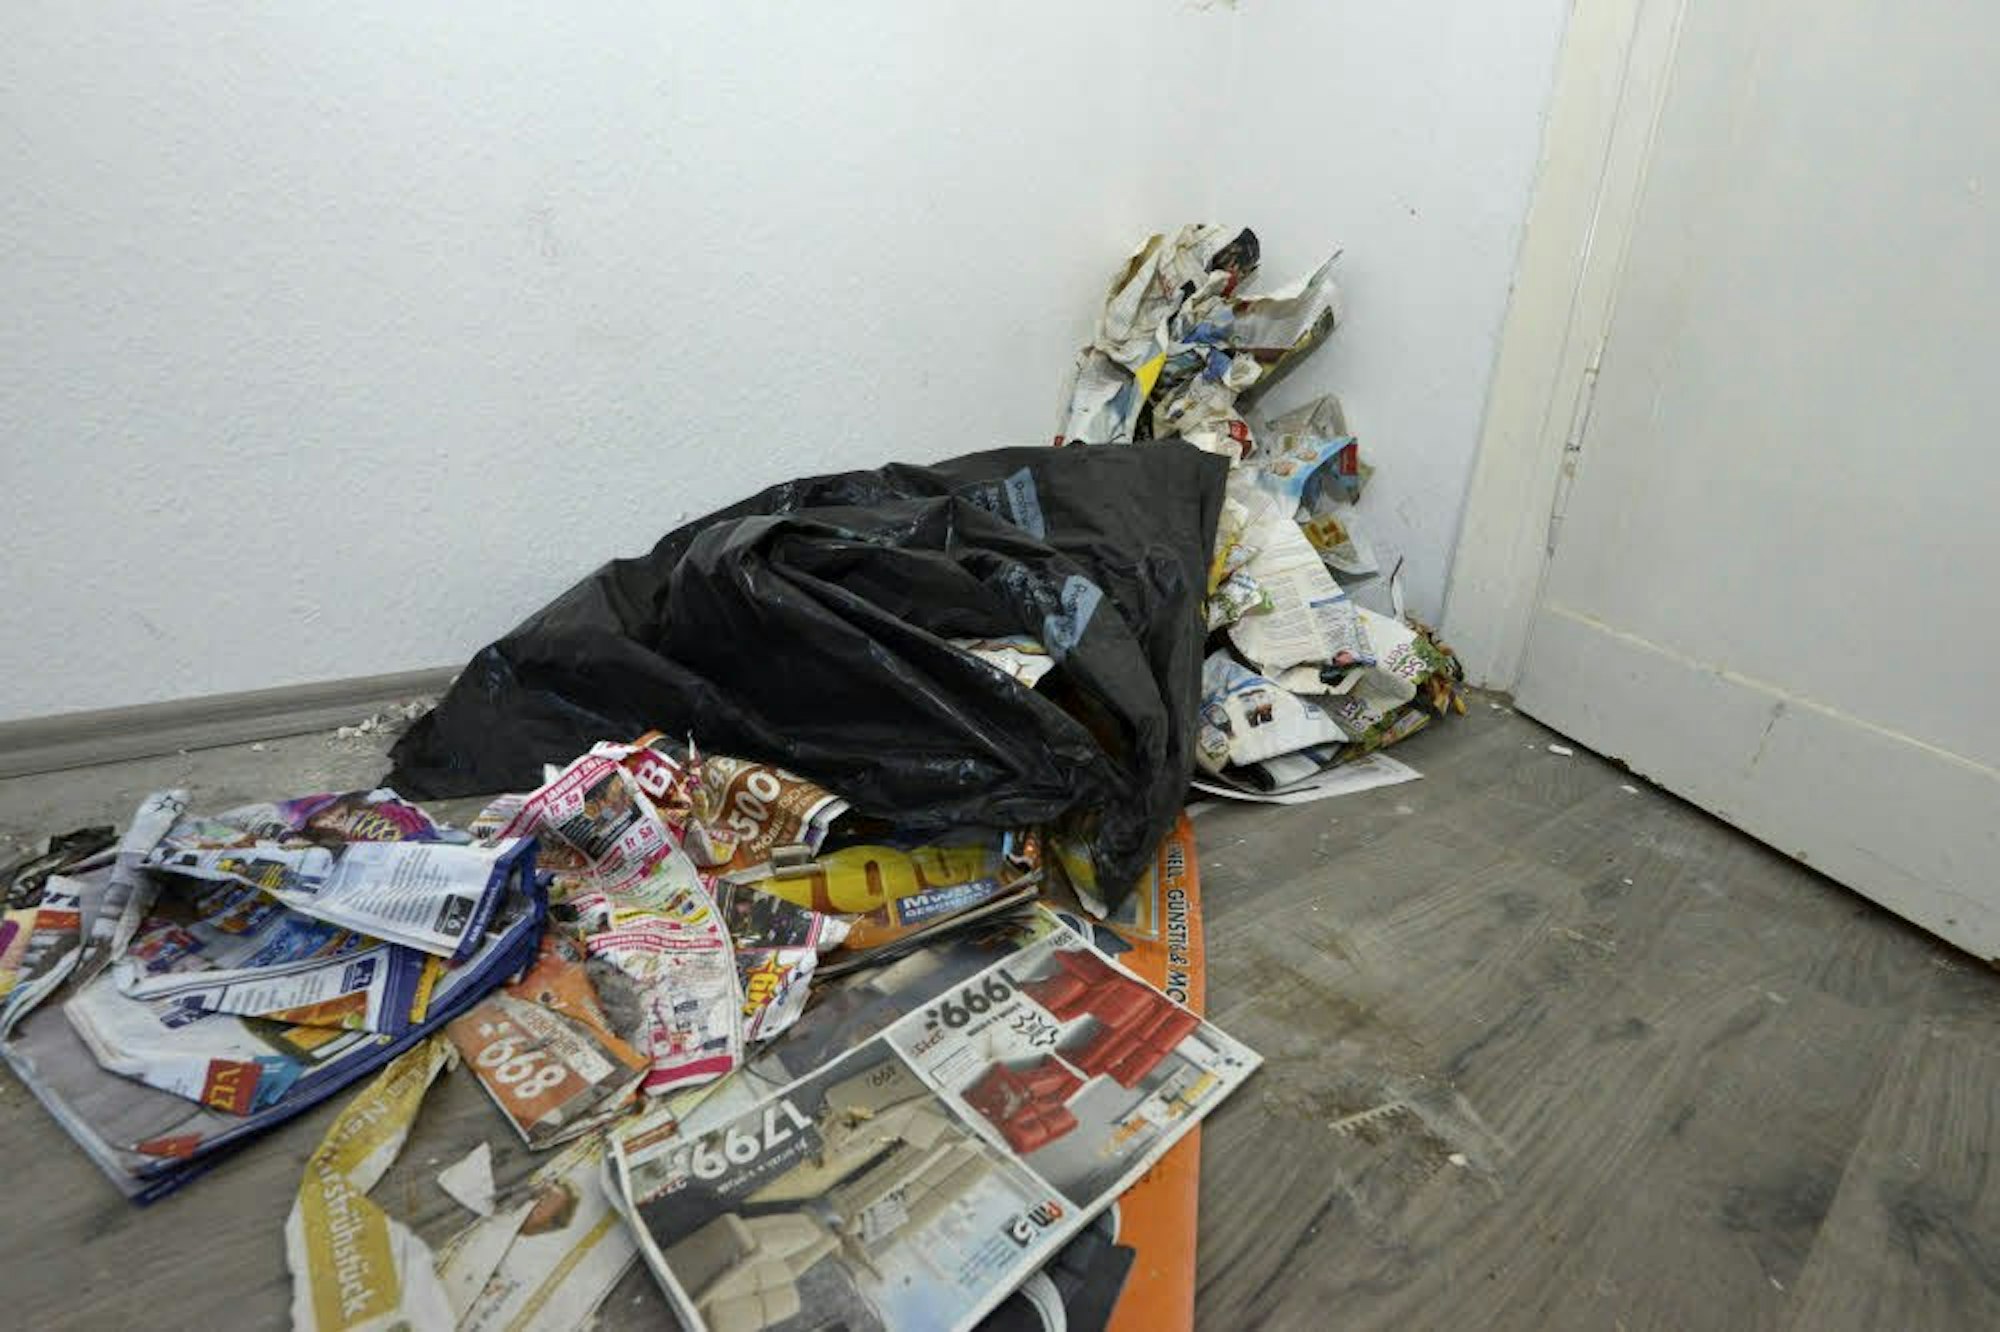 Müll in den Räumen, Schutt in der Toilette – so hinterließen die Schwestern eine Wohnung in Bergisch Gladbach